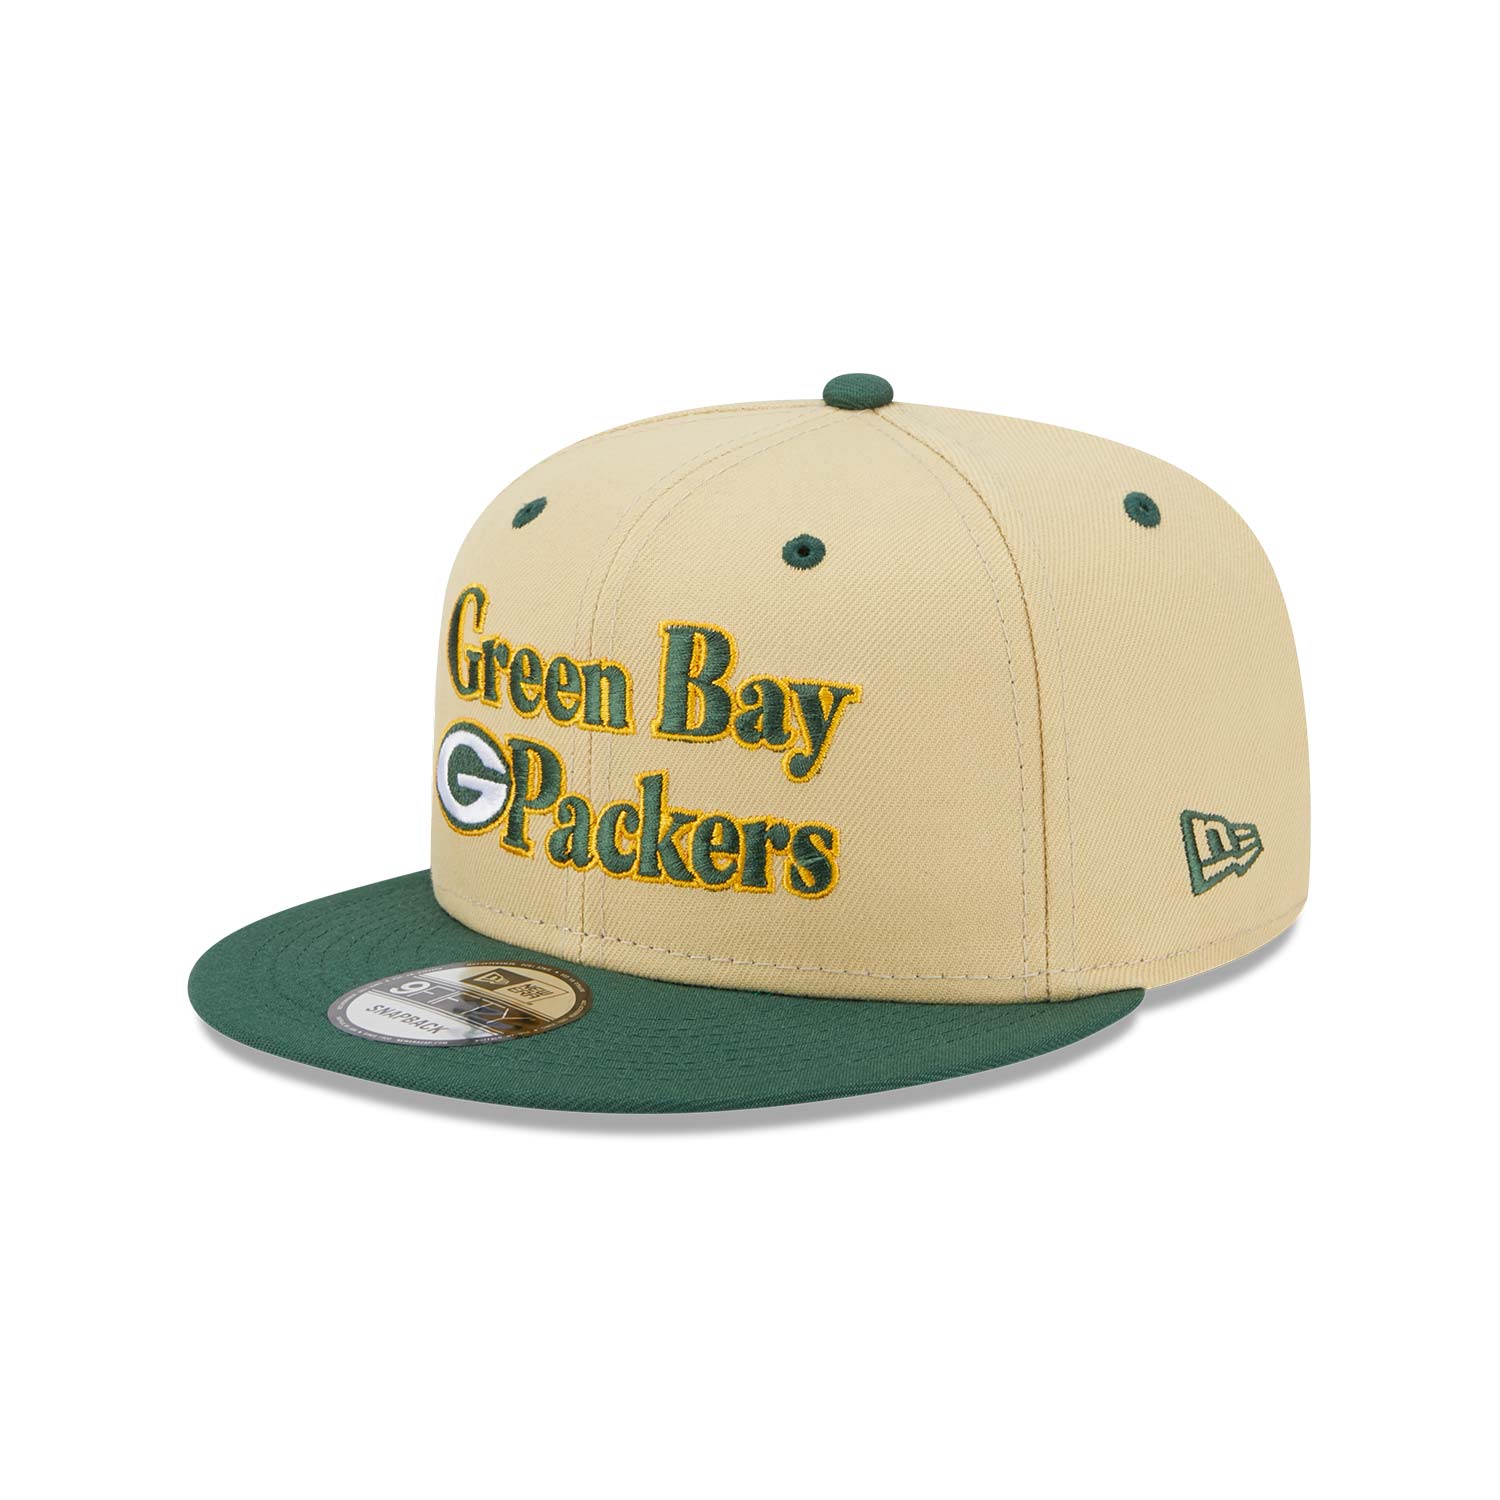 New Retro Green Bay Packers 9FIFTY Cap B9891_1203 B9891_1203 B9891_1203 | New Era Cap UK